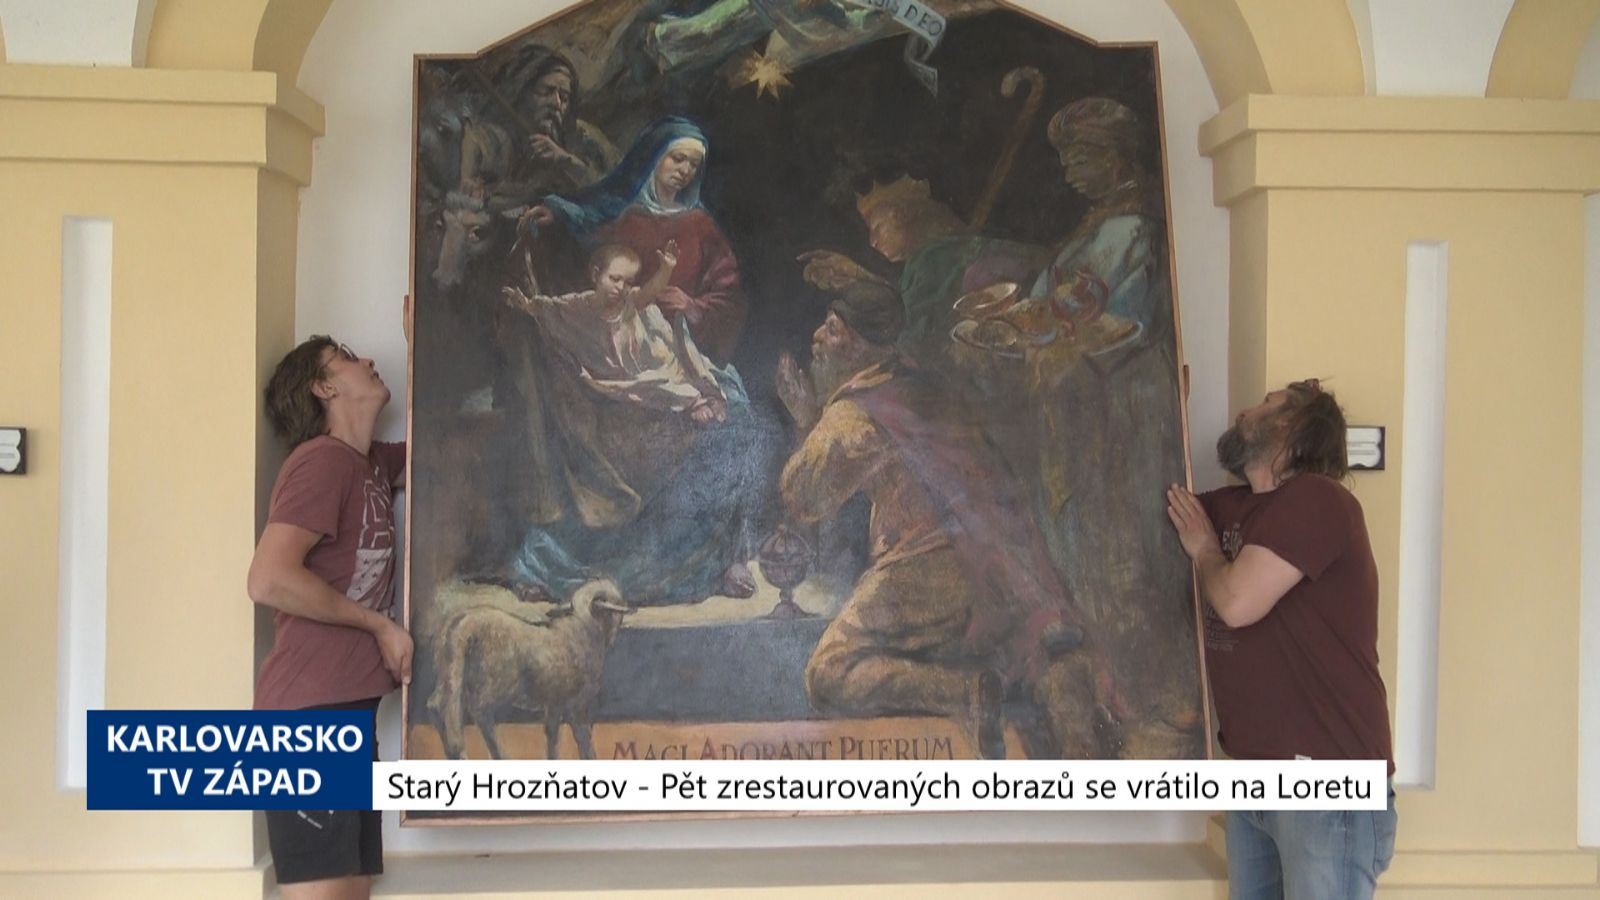 Starý Hrozňatov: Pět zrestaurovaných obrazů se vrátilo na Loretu (TV Západ)